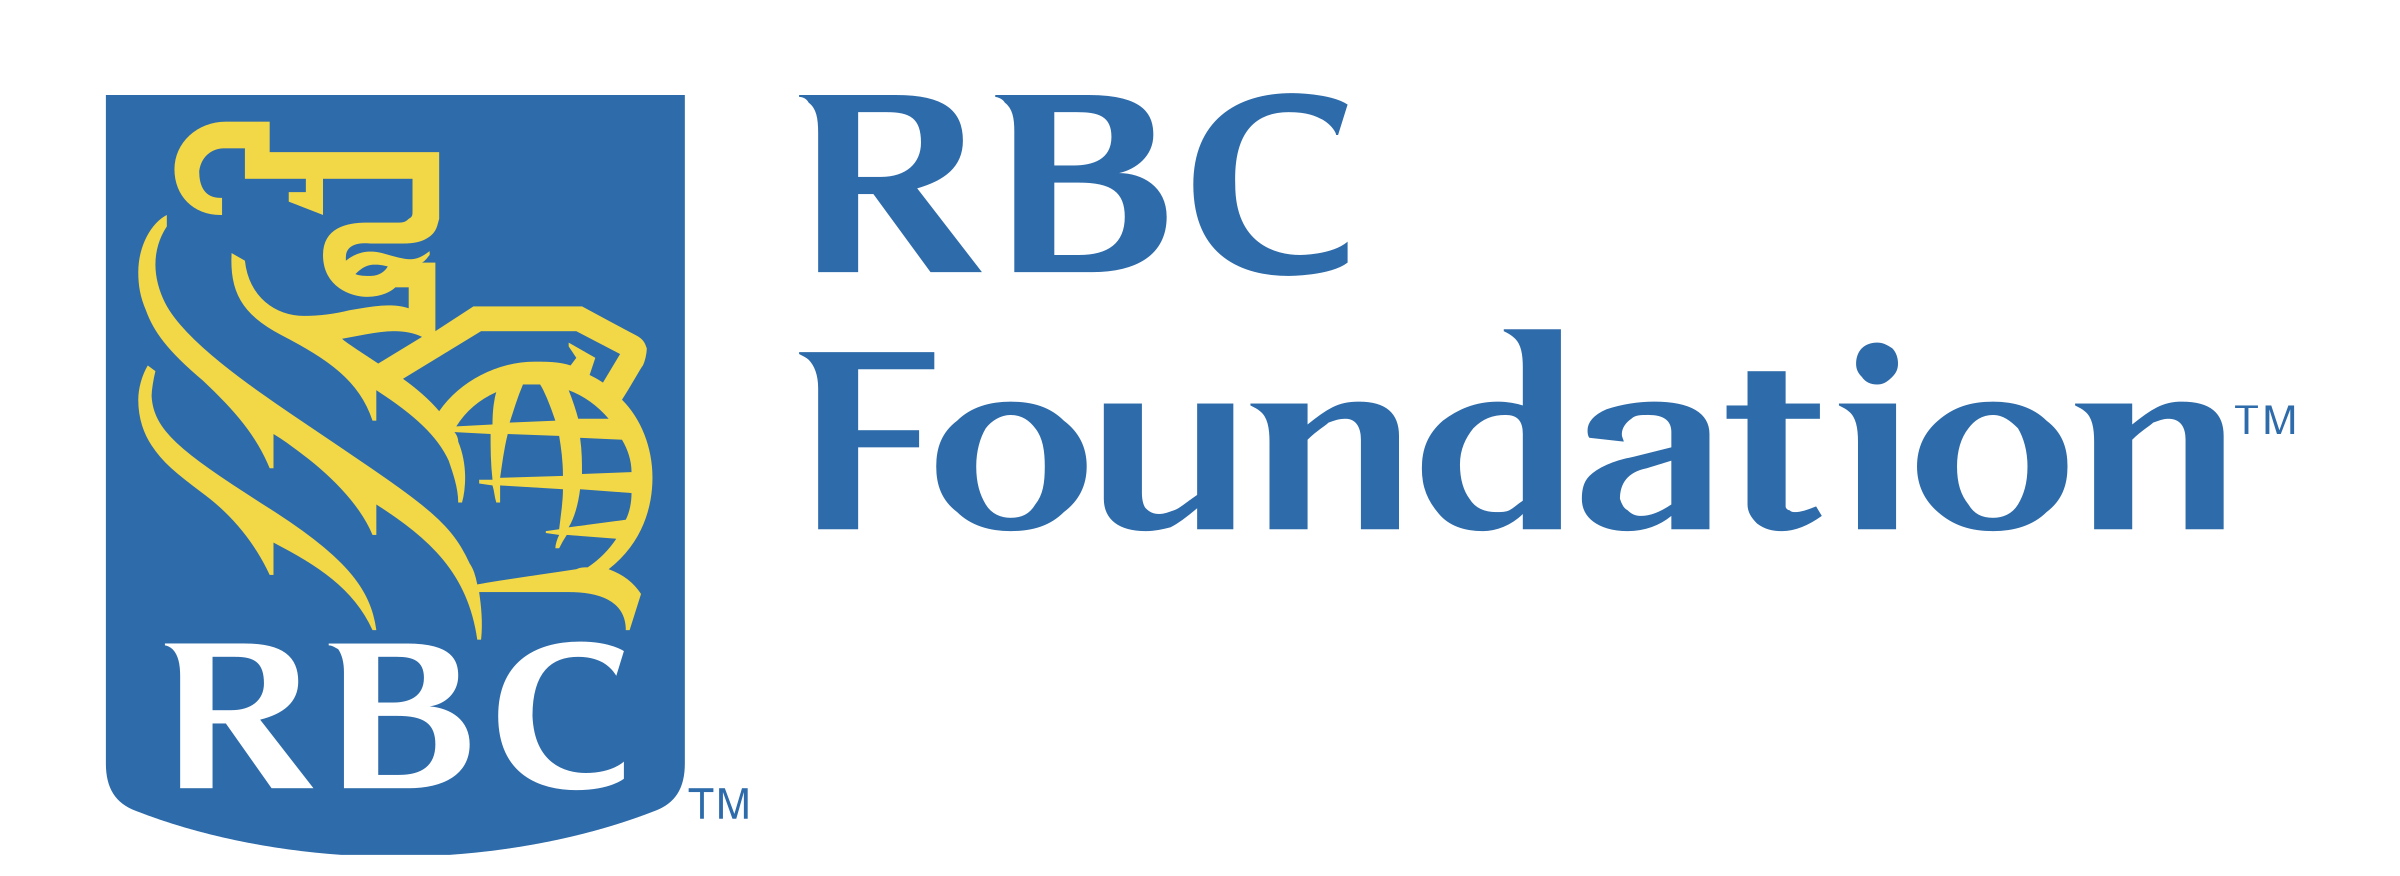 rbc-foundation-logo-png-transparent-e1590513367355.png